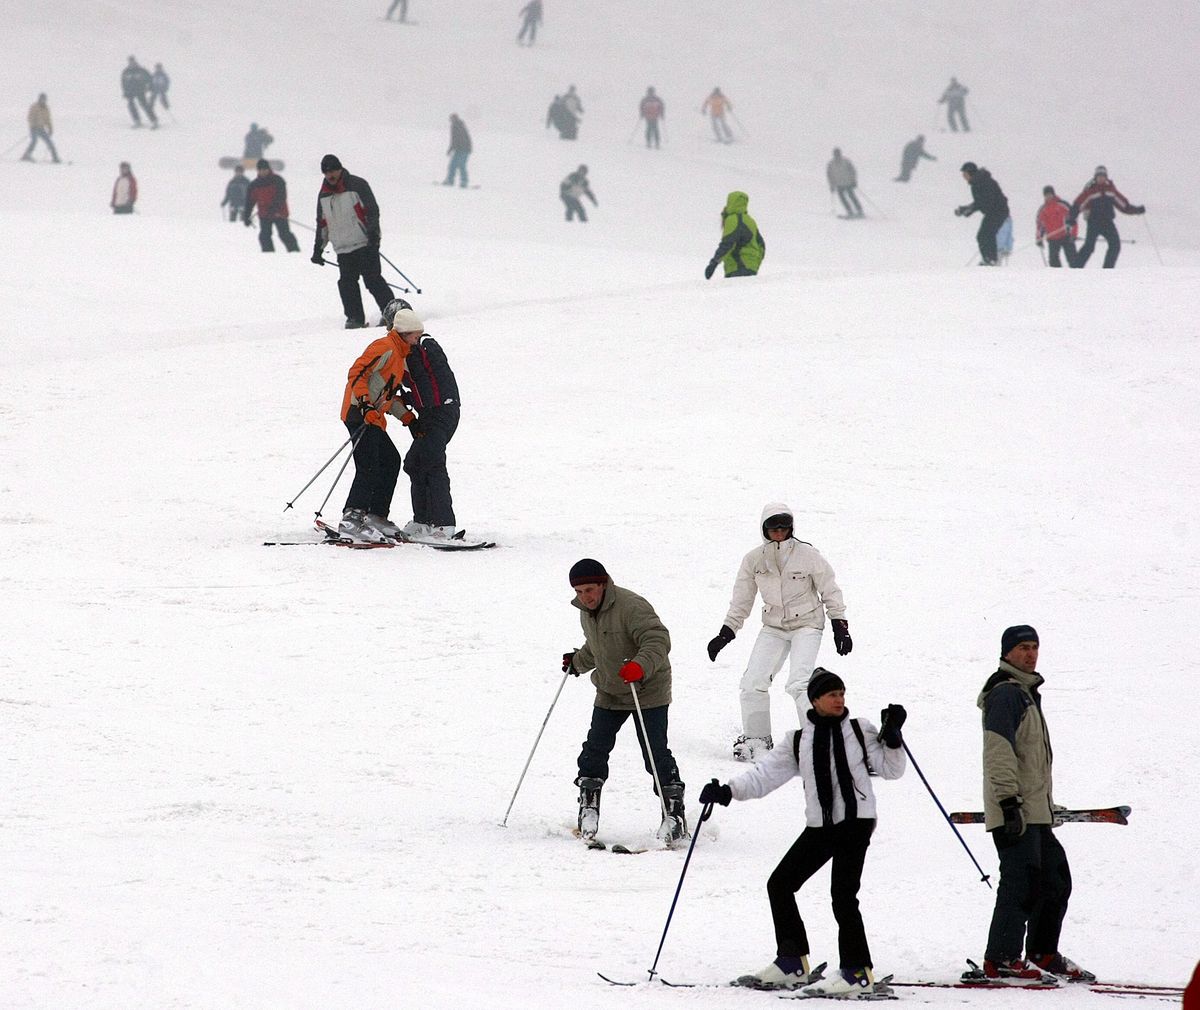 Ferie 2021. Chcesz pojechać na narty? To powinieneś wiedzieć